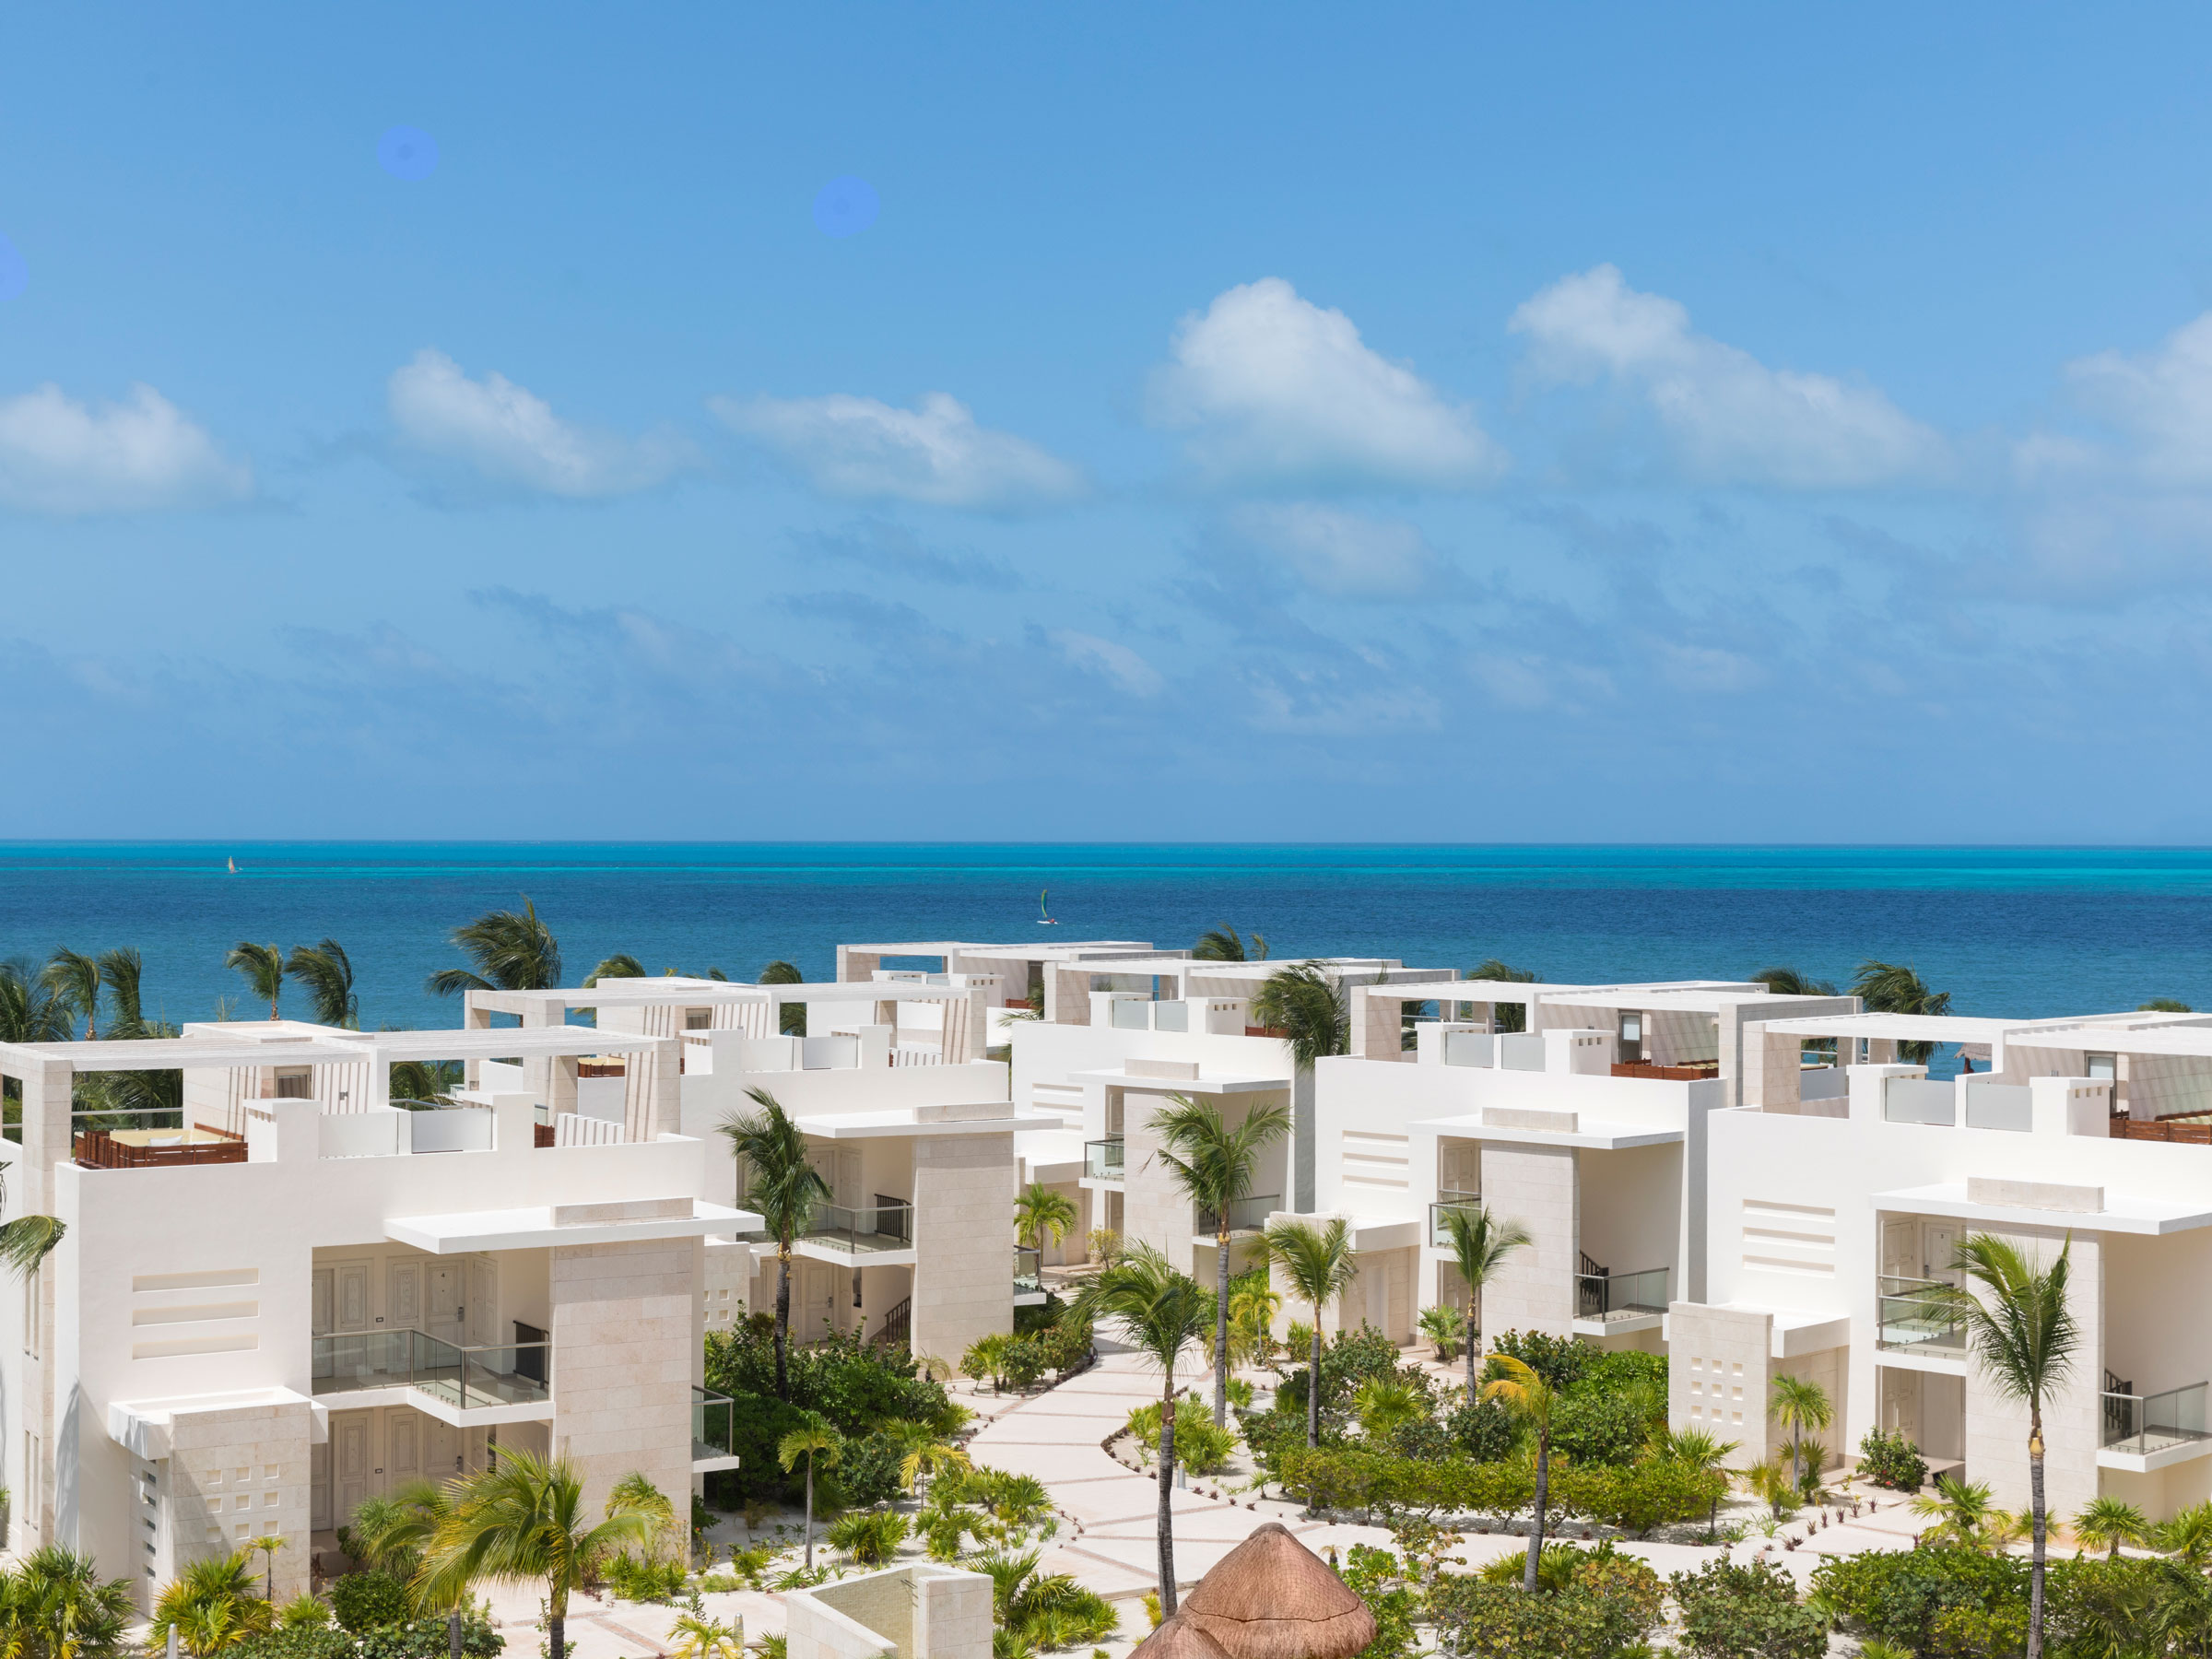 Ocean View Hotel in Cancun